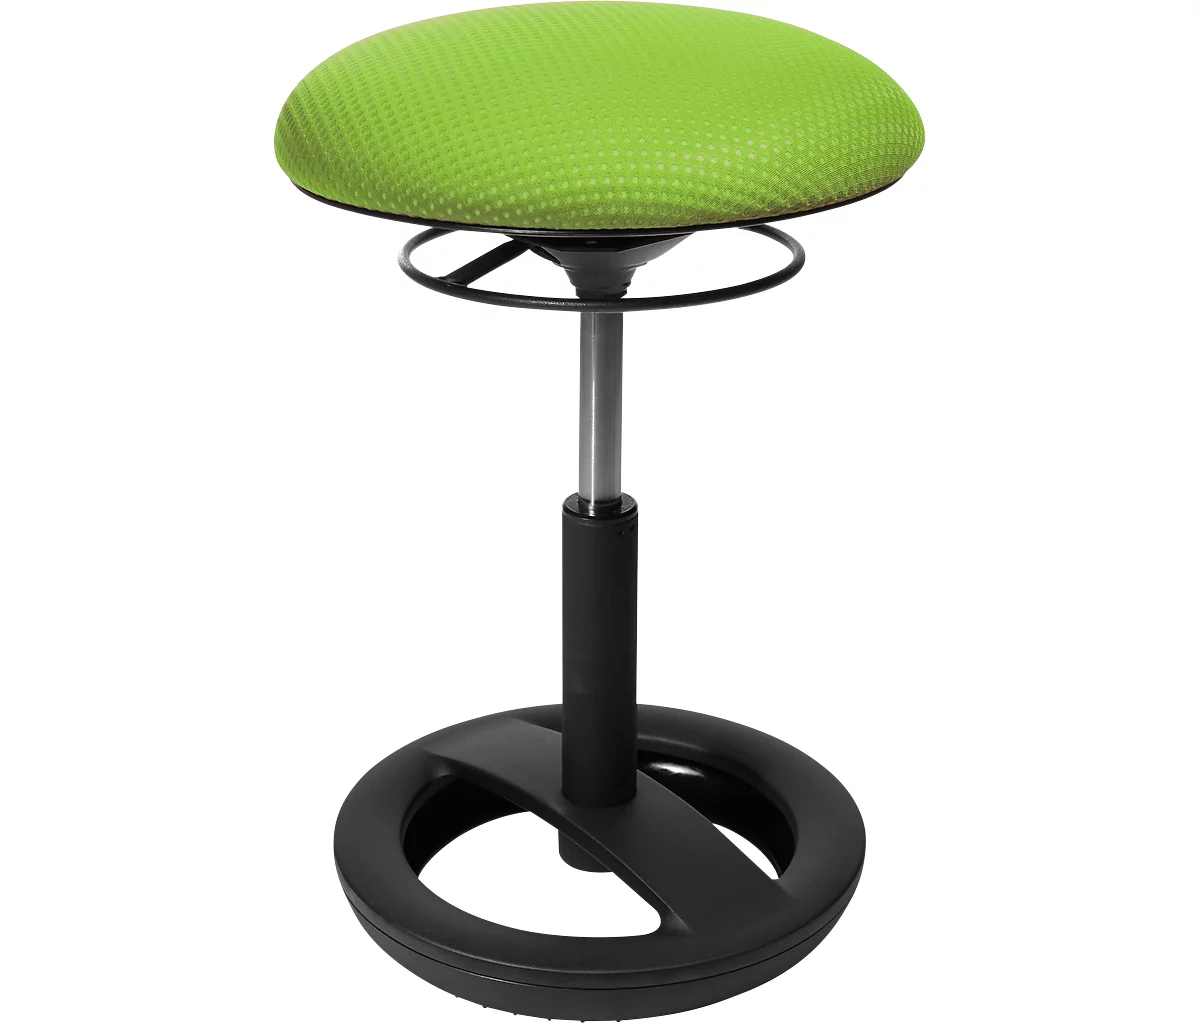 Taburete de fitness SITNESS BOB, ergonómico, altura del asiento 440 - 570 mm, verde manzana, base con recubrimiento de polvo negro